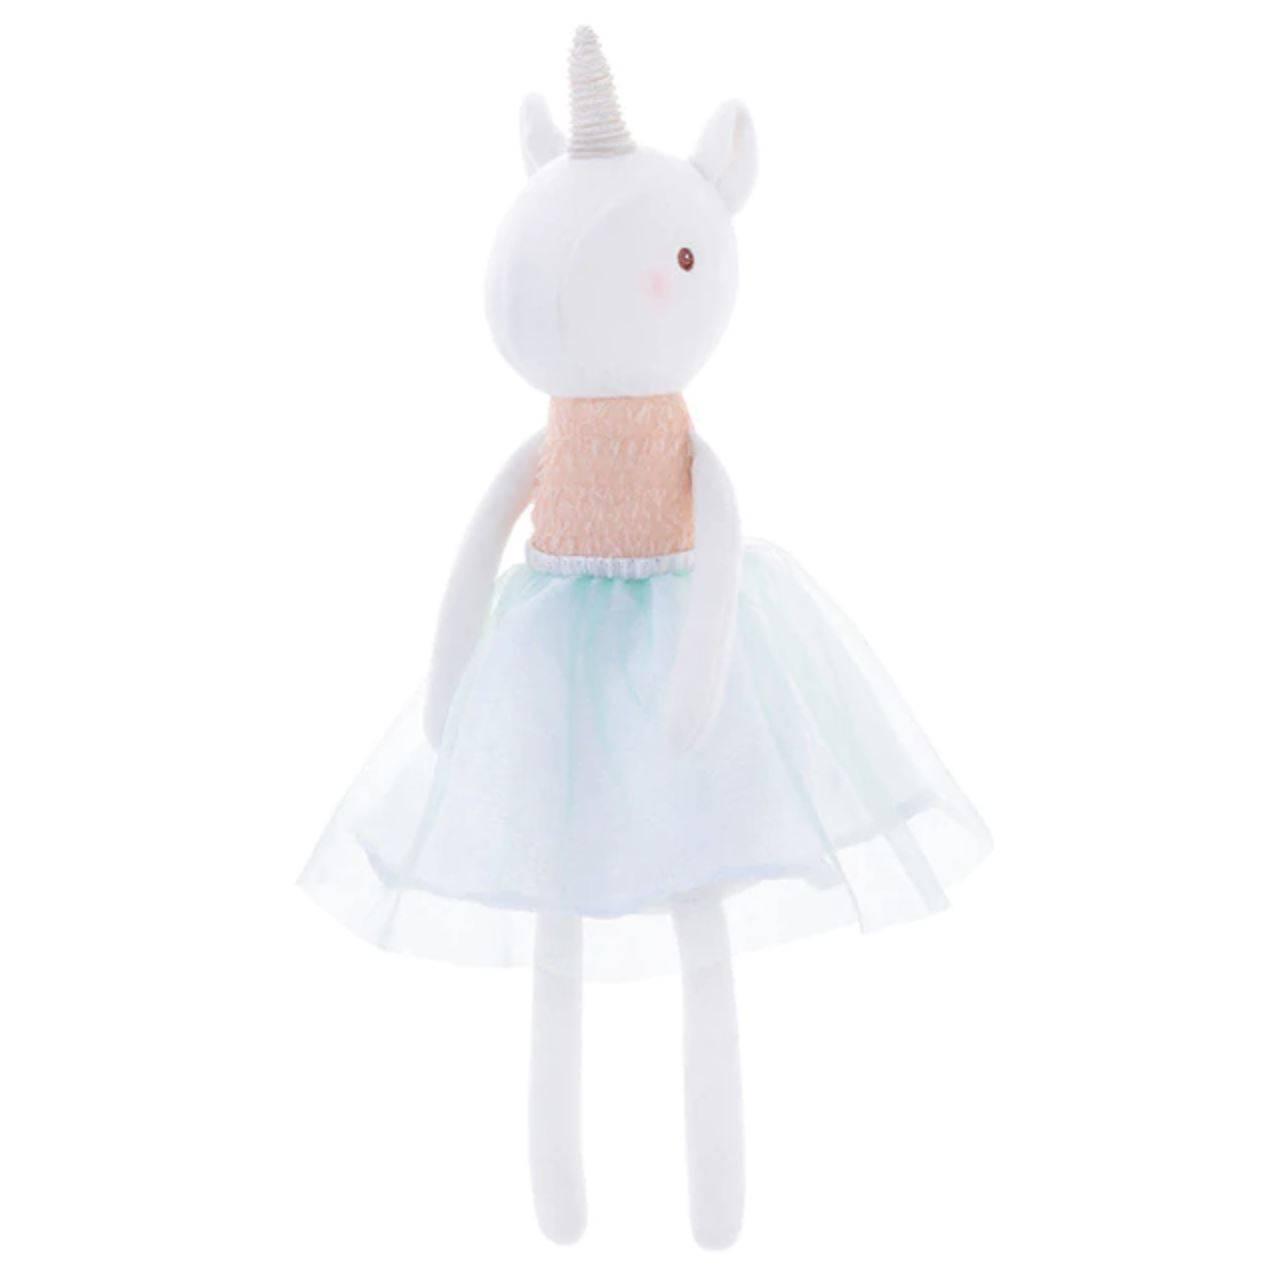 Unicorn plush Pink Doll - A Unicorn